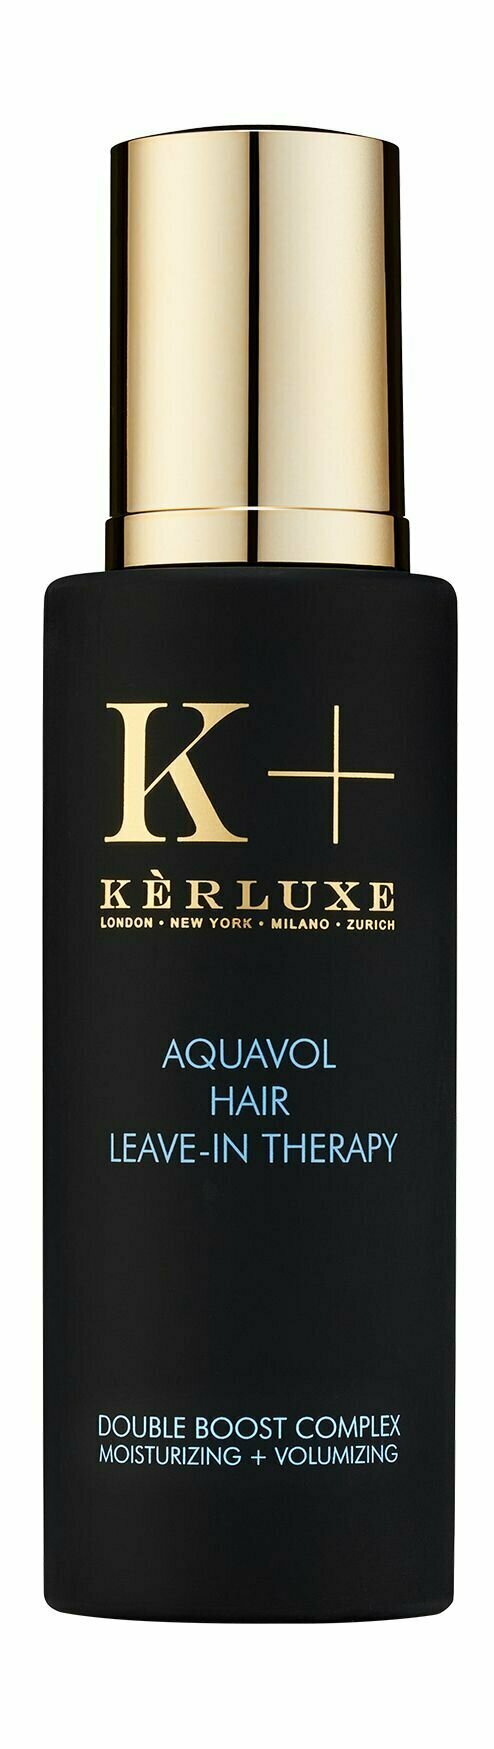 Увлажняющий бустер для объема волос c аминокислотами овса Kerluxe Aquavol Hair Leave in Therapy